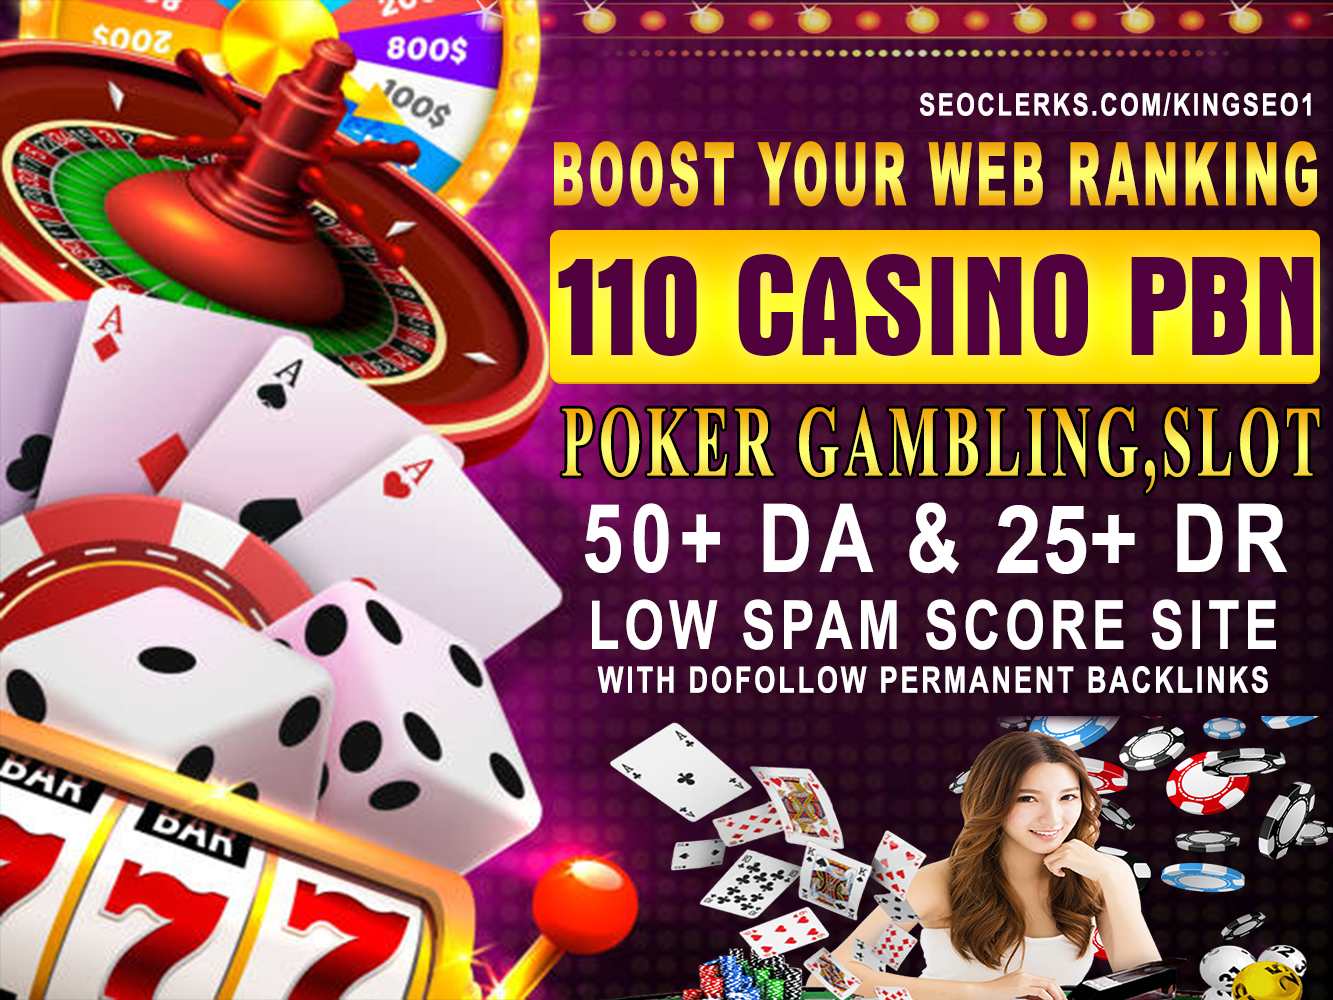  BUY 2 GET 1 FREE 110 PBN Casino Poker Gambling high DA 55+ DR 25+ Low Spam, Dofollow Backlinks 